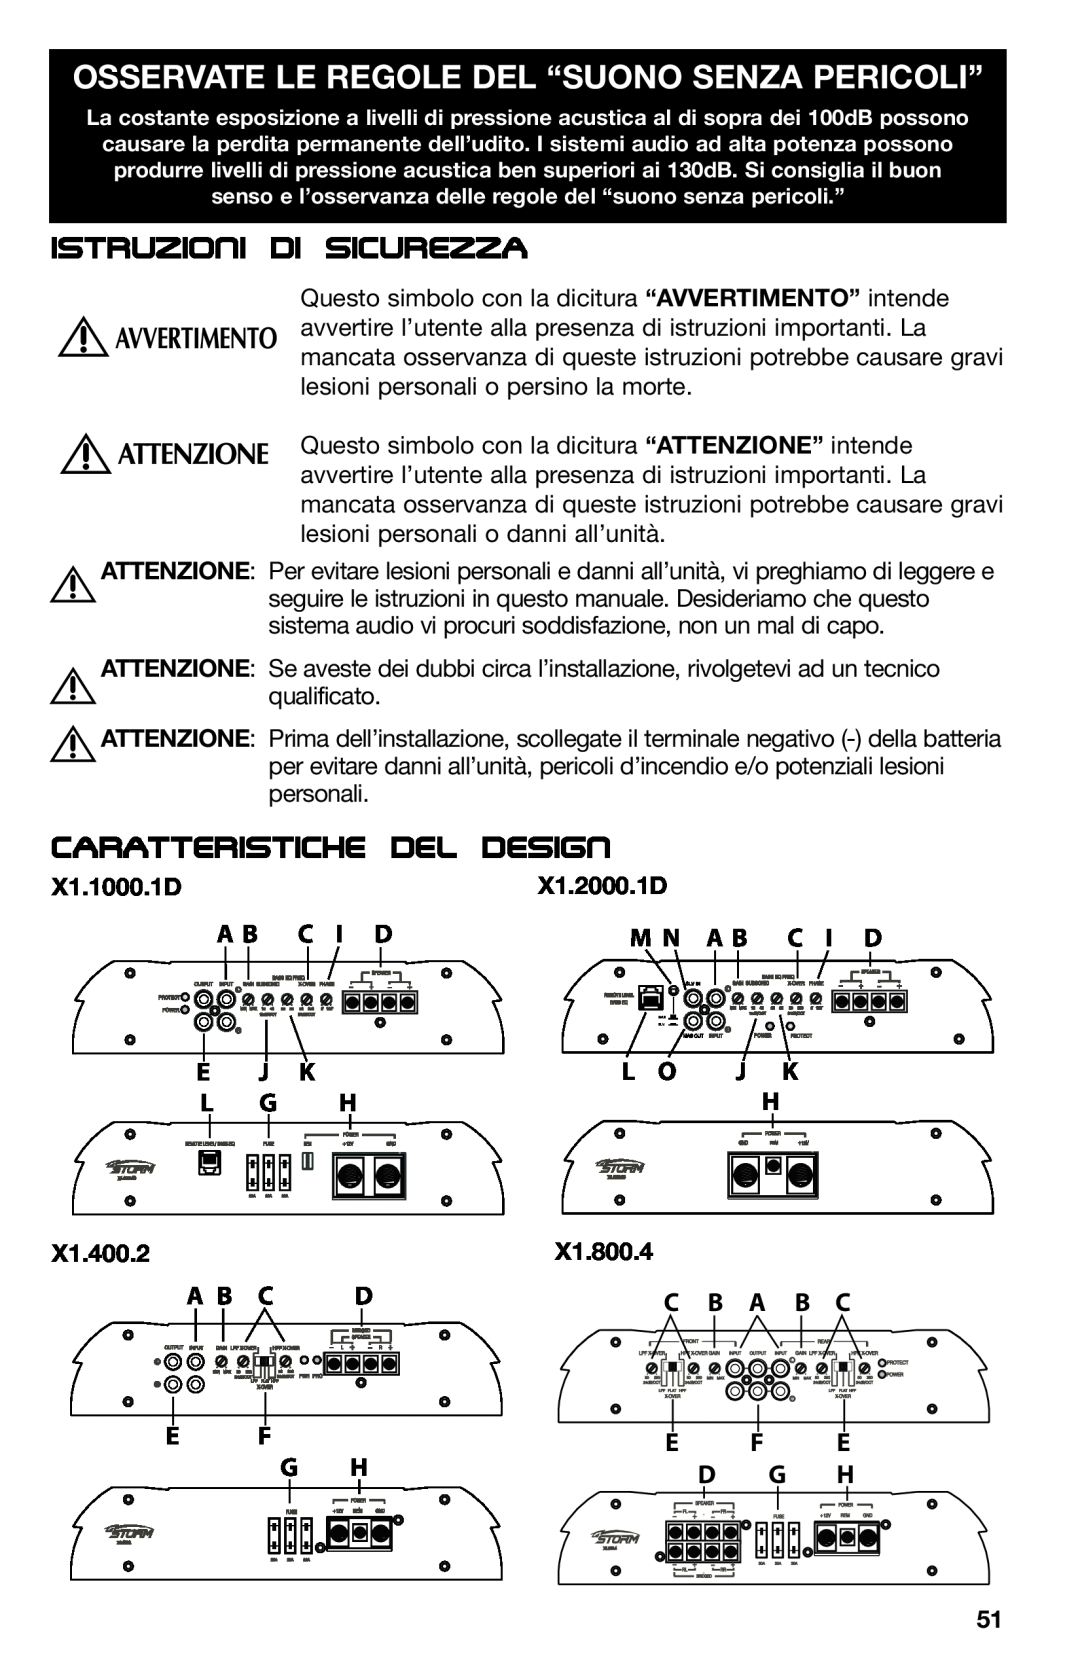 Lightning Audio X1.1000.1D Osservate Le Regole Del “Suono Senza Pericoli”, Istruzioni di Sicurezza, Caratteristiche del 